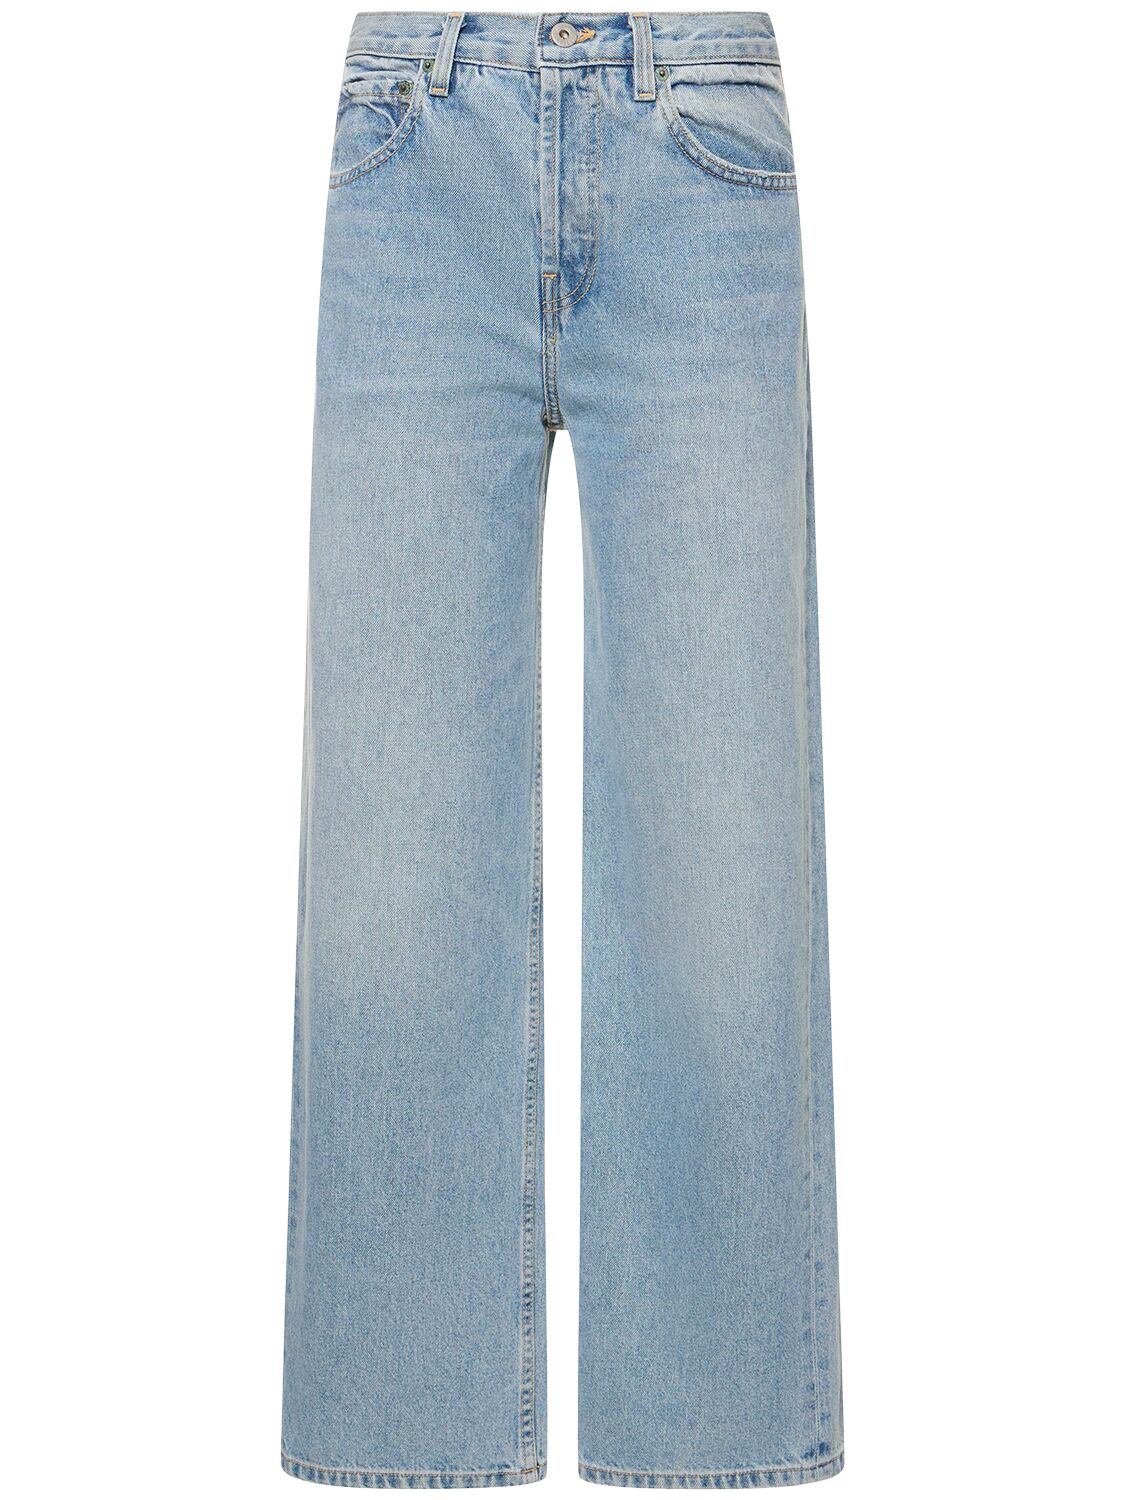 The Remy Cotton Denim Jeans